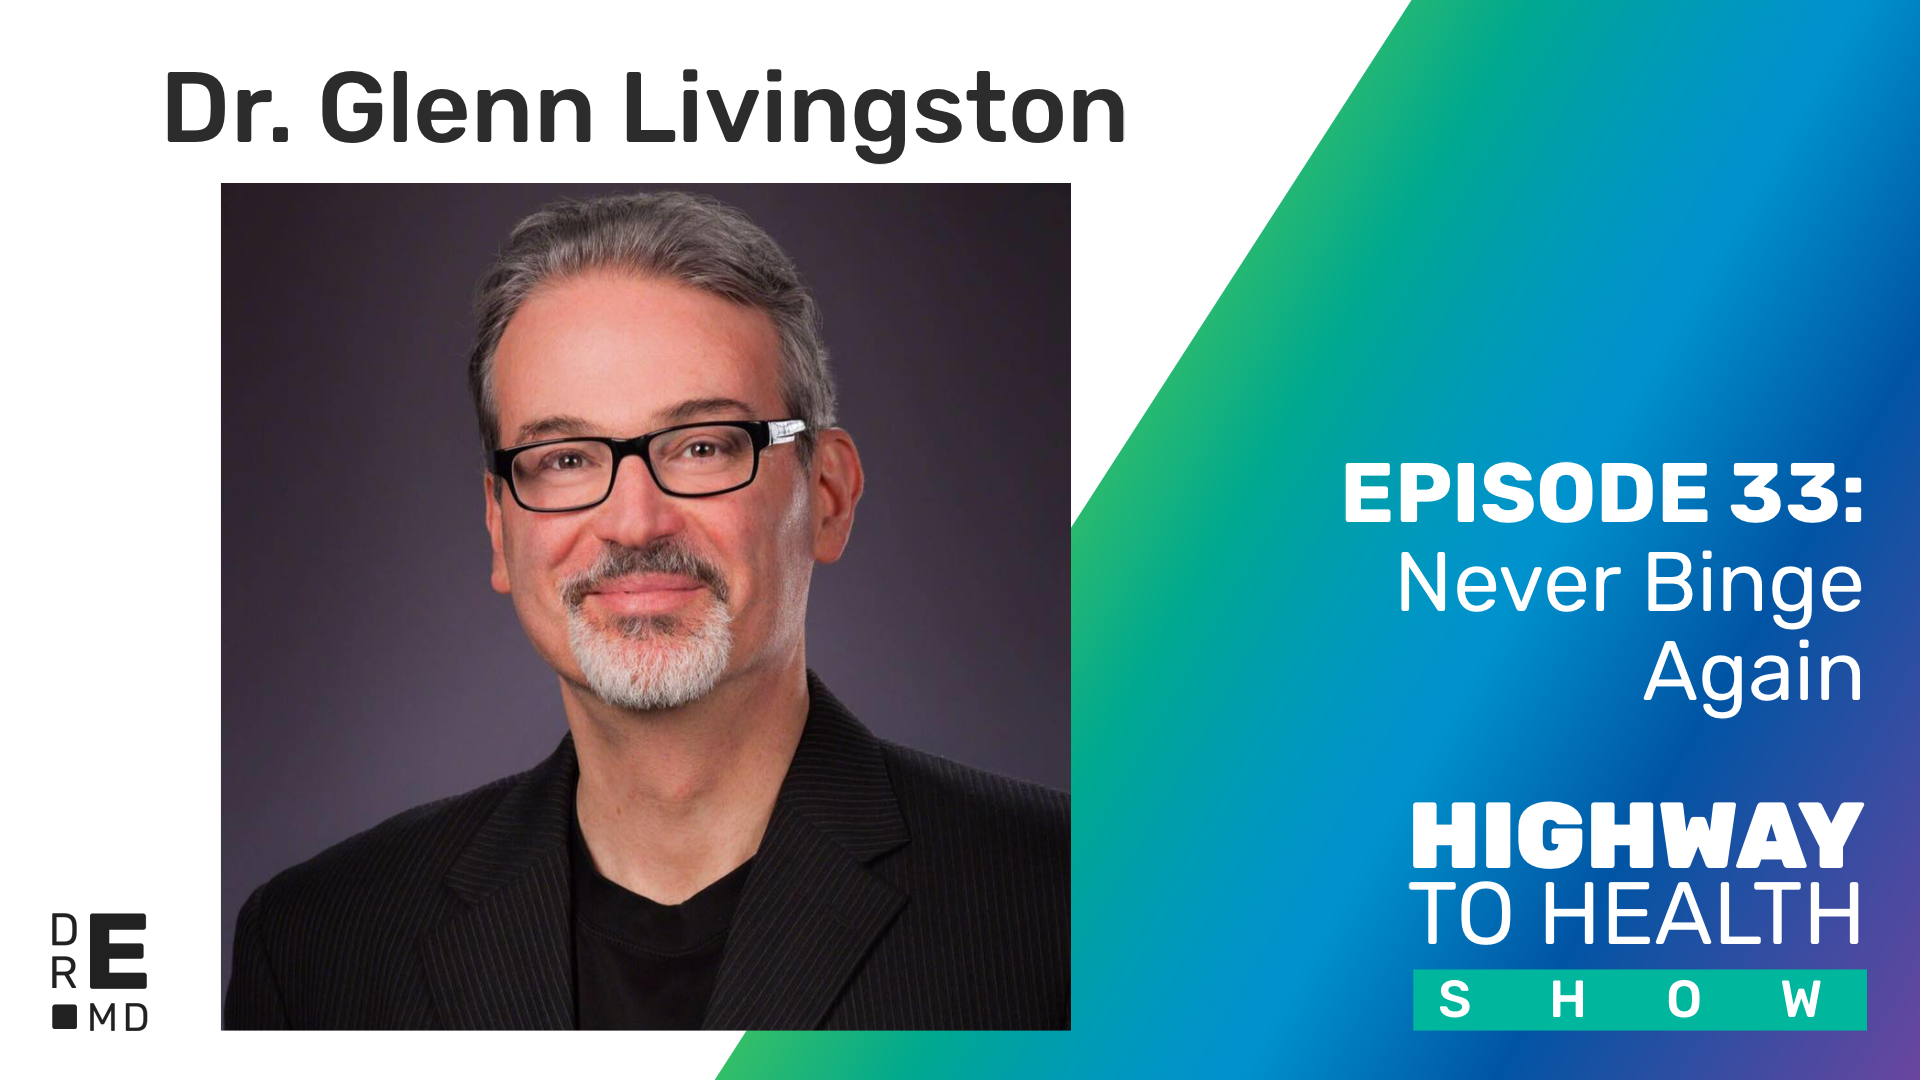 Highway to Health: Ep 33 - Dr Glenn Livingston